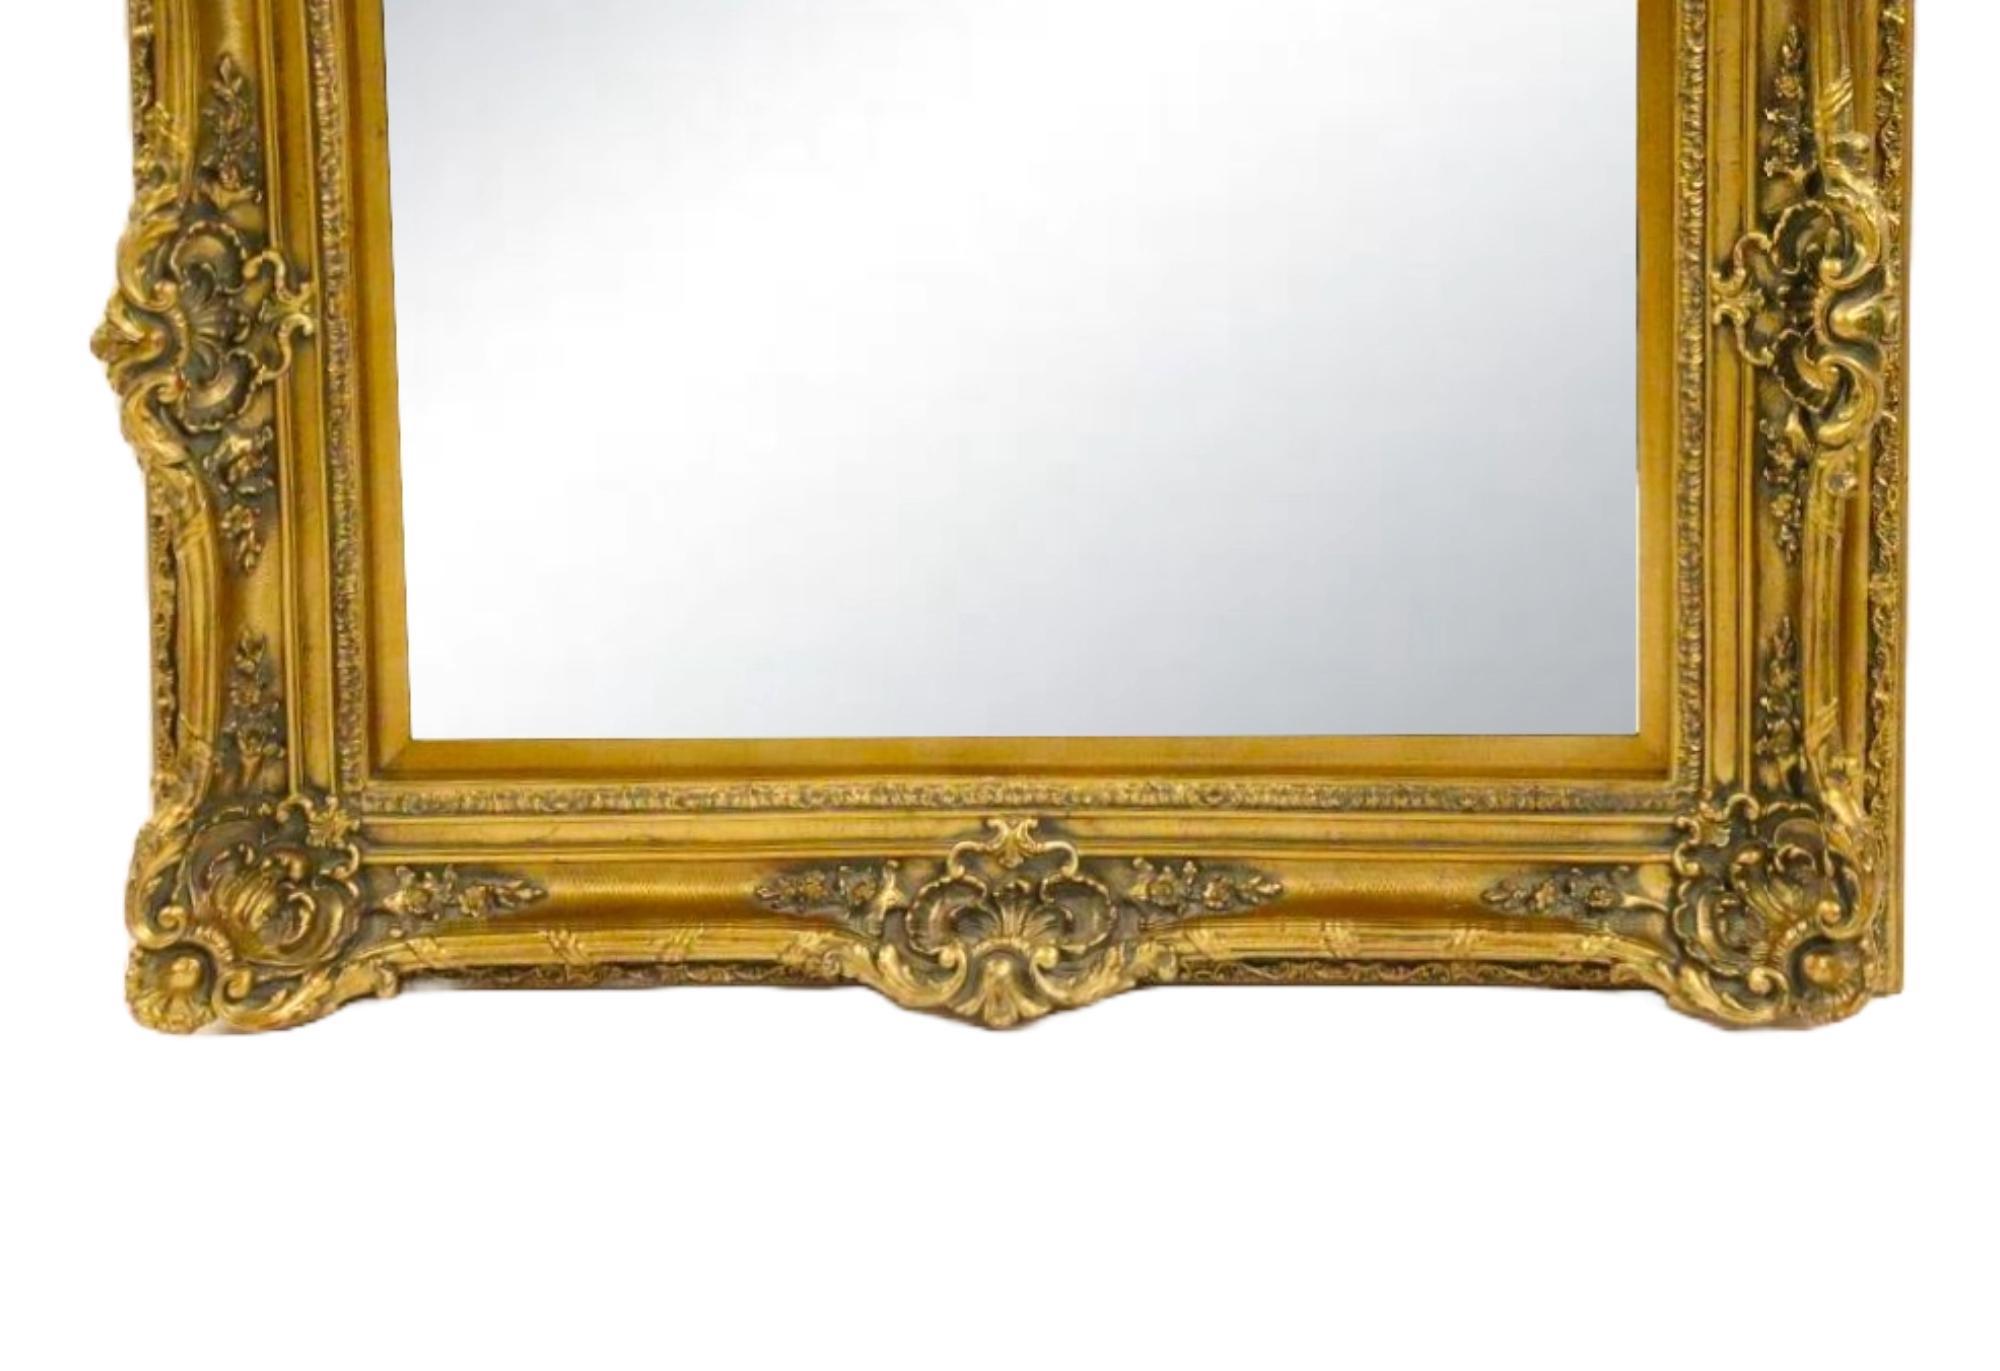 Erhöhen Sie Ihr Heimdekor mit diesem exquisiten antiken, handgeschnitzten Wandspiegel mit Goldholzrahmen. Der Rahmen zeigt ein reichhaltig verziertes Blumenmuster, das fachmännisch hergestellt wurde, um eine atemberaubende optische Wirkung zu